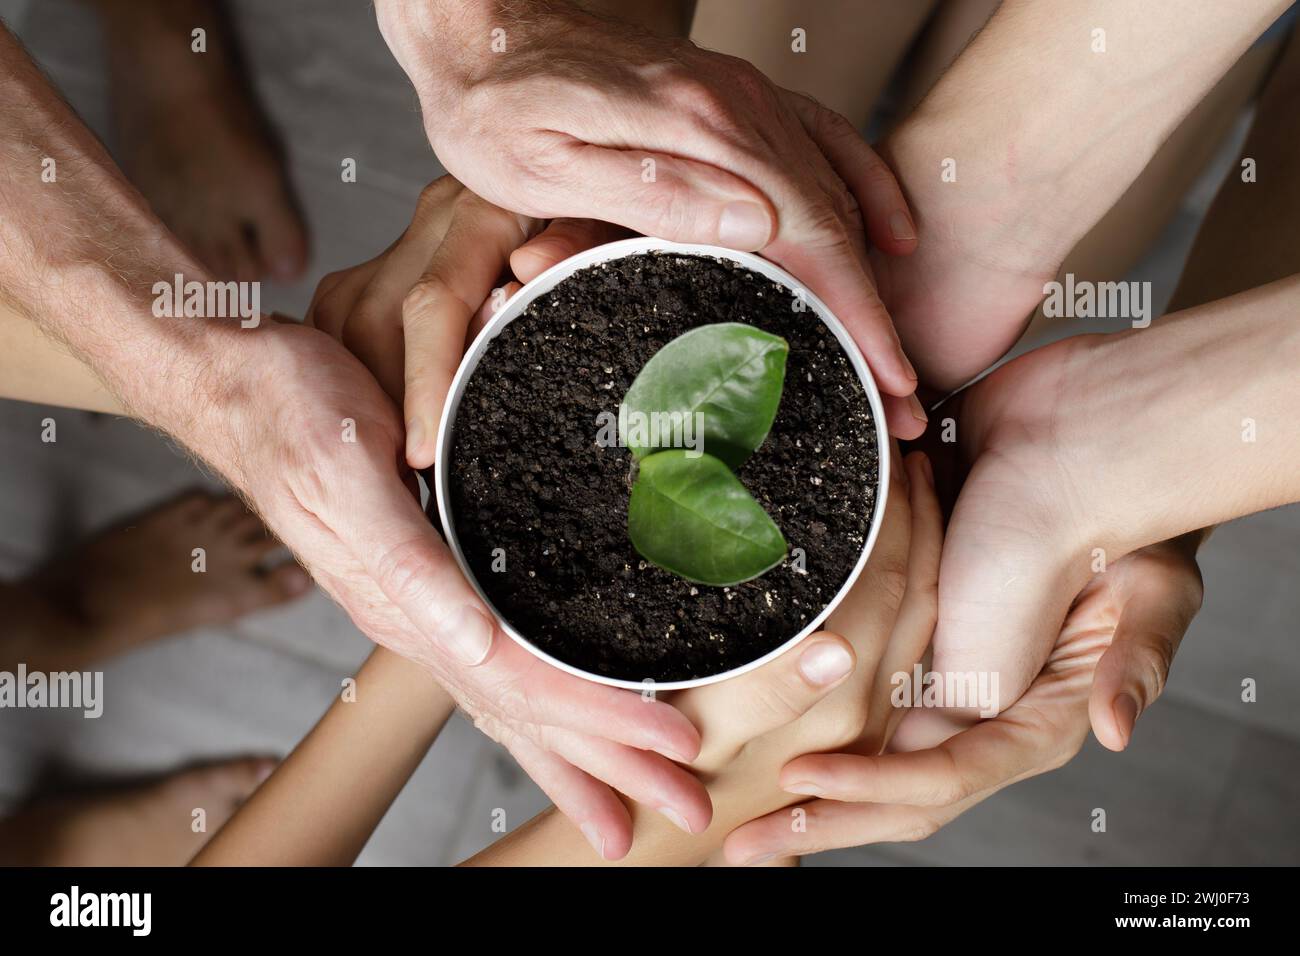 Mani umane che tengono la pianta verde in vaso su sfondo grigio, vista dall'alto. Concetto di protezione dell'ambiente Foto Stock